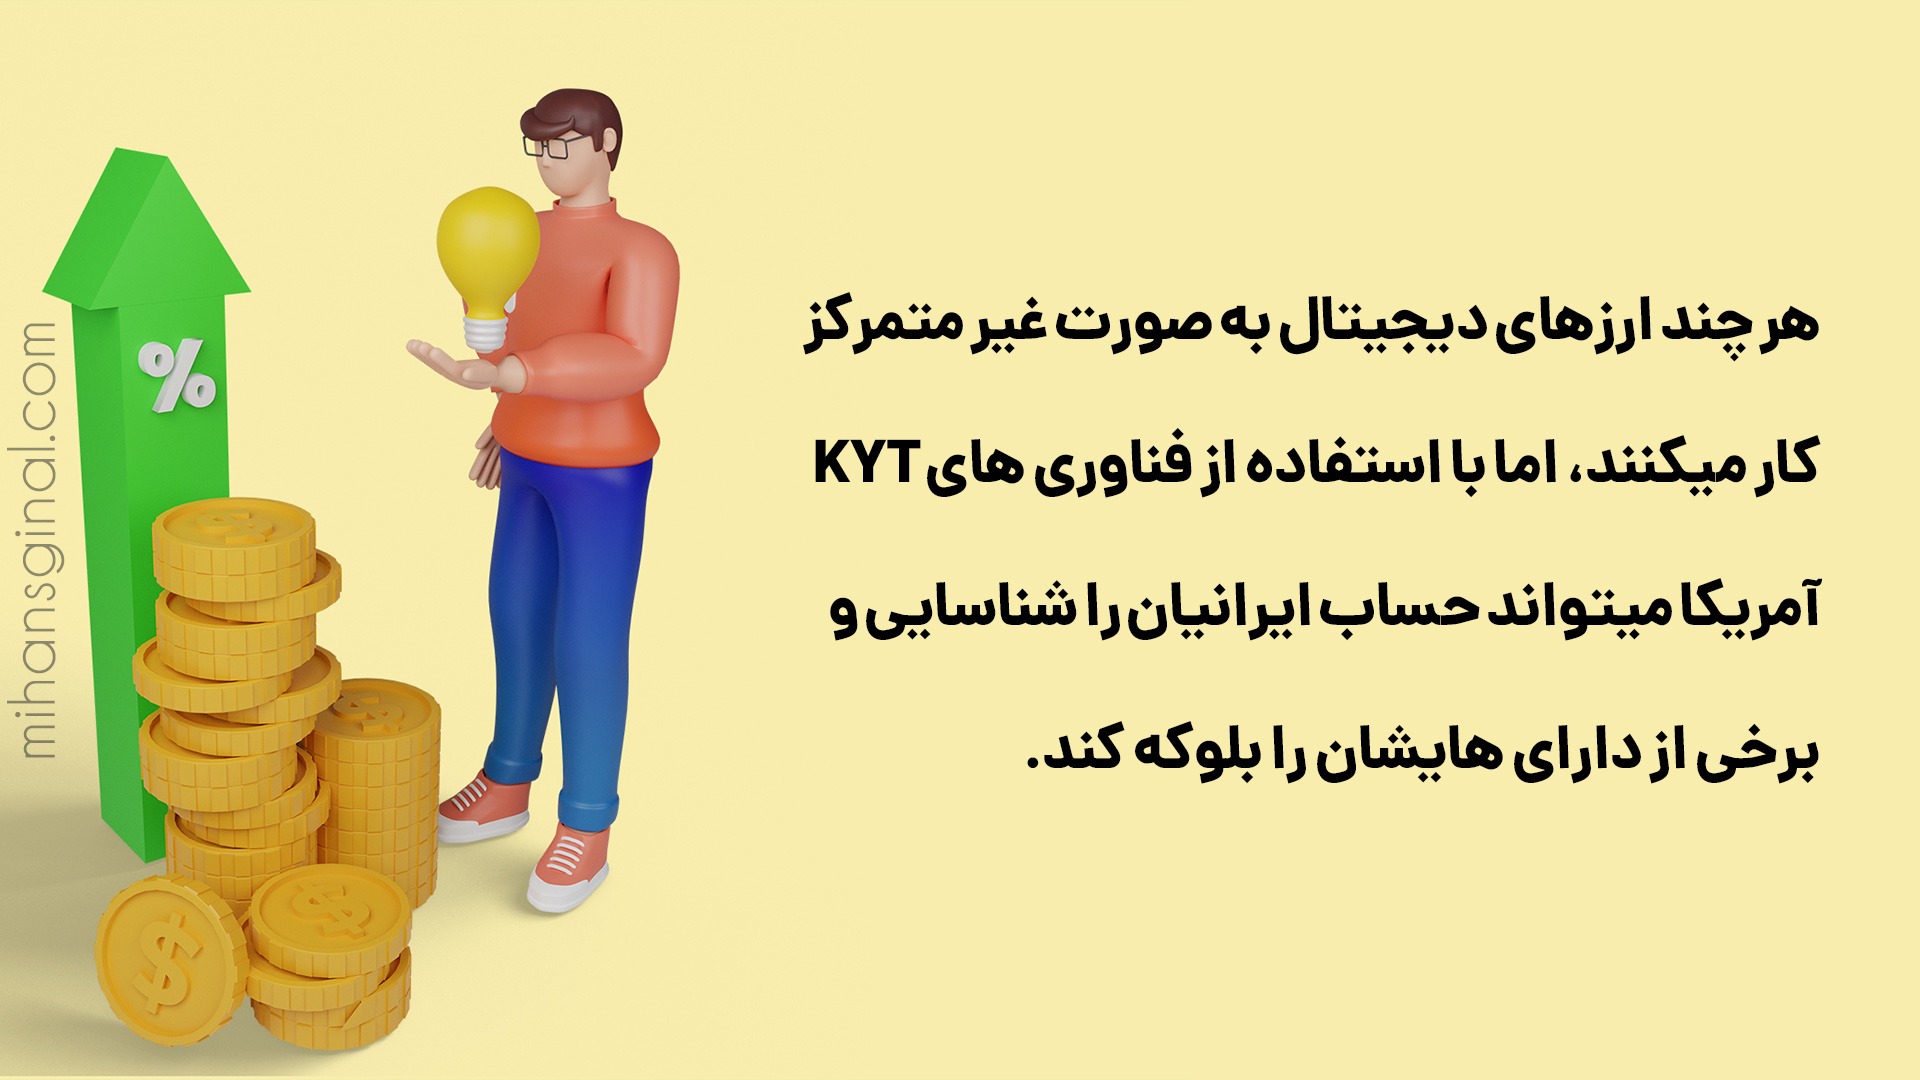 هر چند ارزهای دیجیتال به صورت غیر متمرکز کار میکنند، اما با استفاده از فناوری های KYT آمریکا میتواند حساب ایرانیان را شناسایی و برخی از دارای هایشان را بلوکه کند.